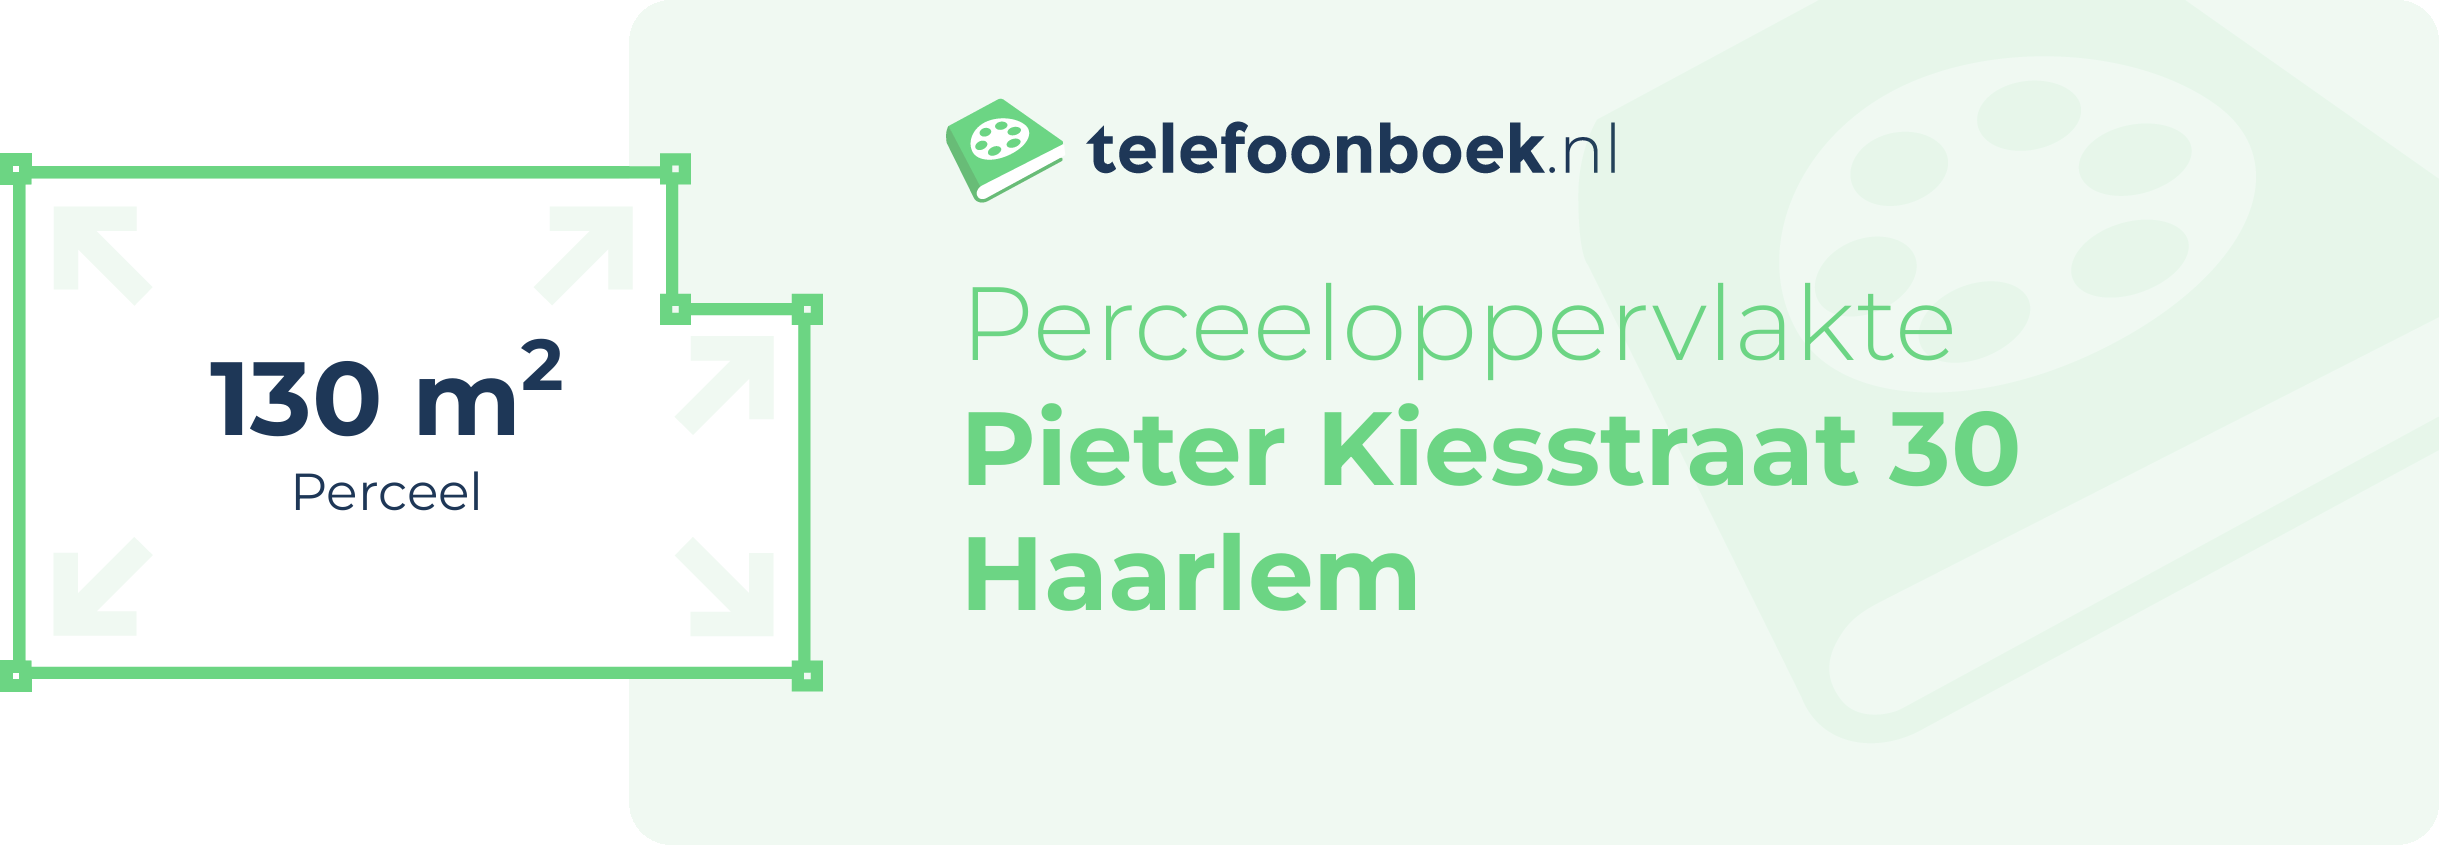 Perceeloppervlakte Pieter Kiesstraat 30 Haarlem